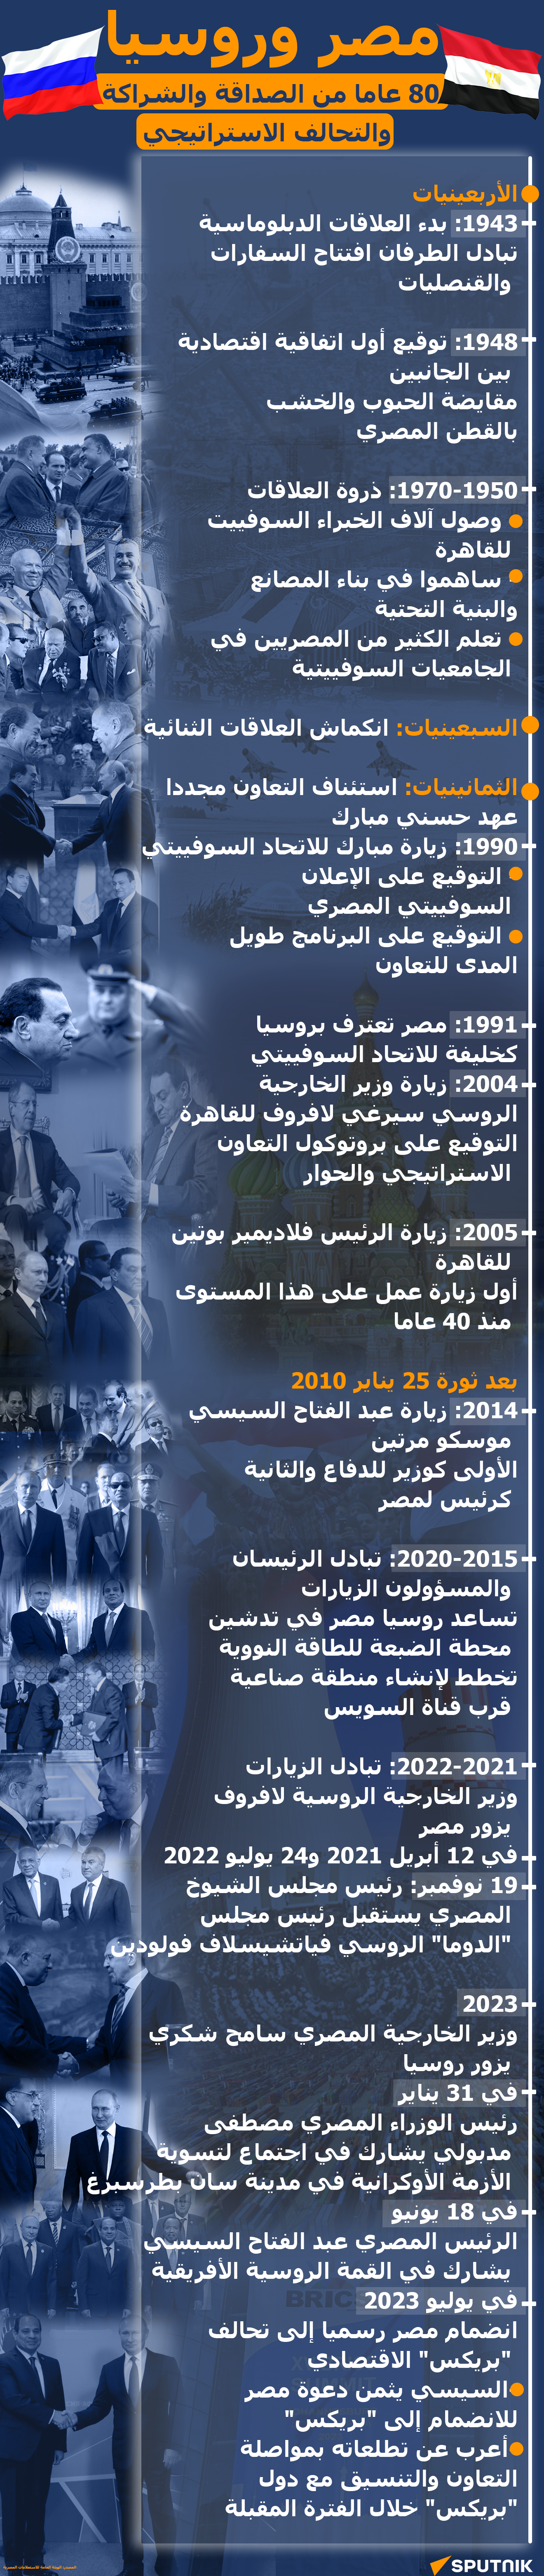 مصر وروسيا... 80 عاما من الصداقة والشراكة والتحالف الاستراتيجي - سبوتنيك عربي